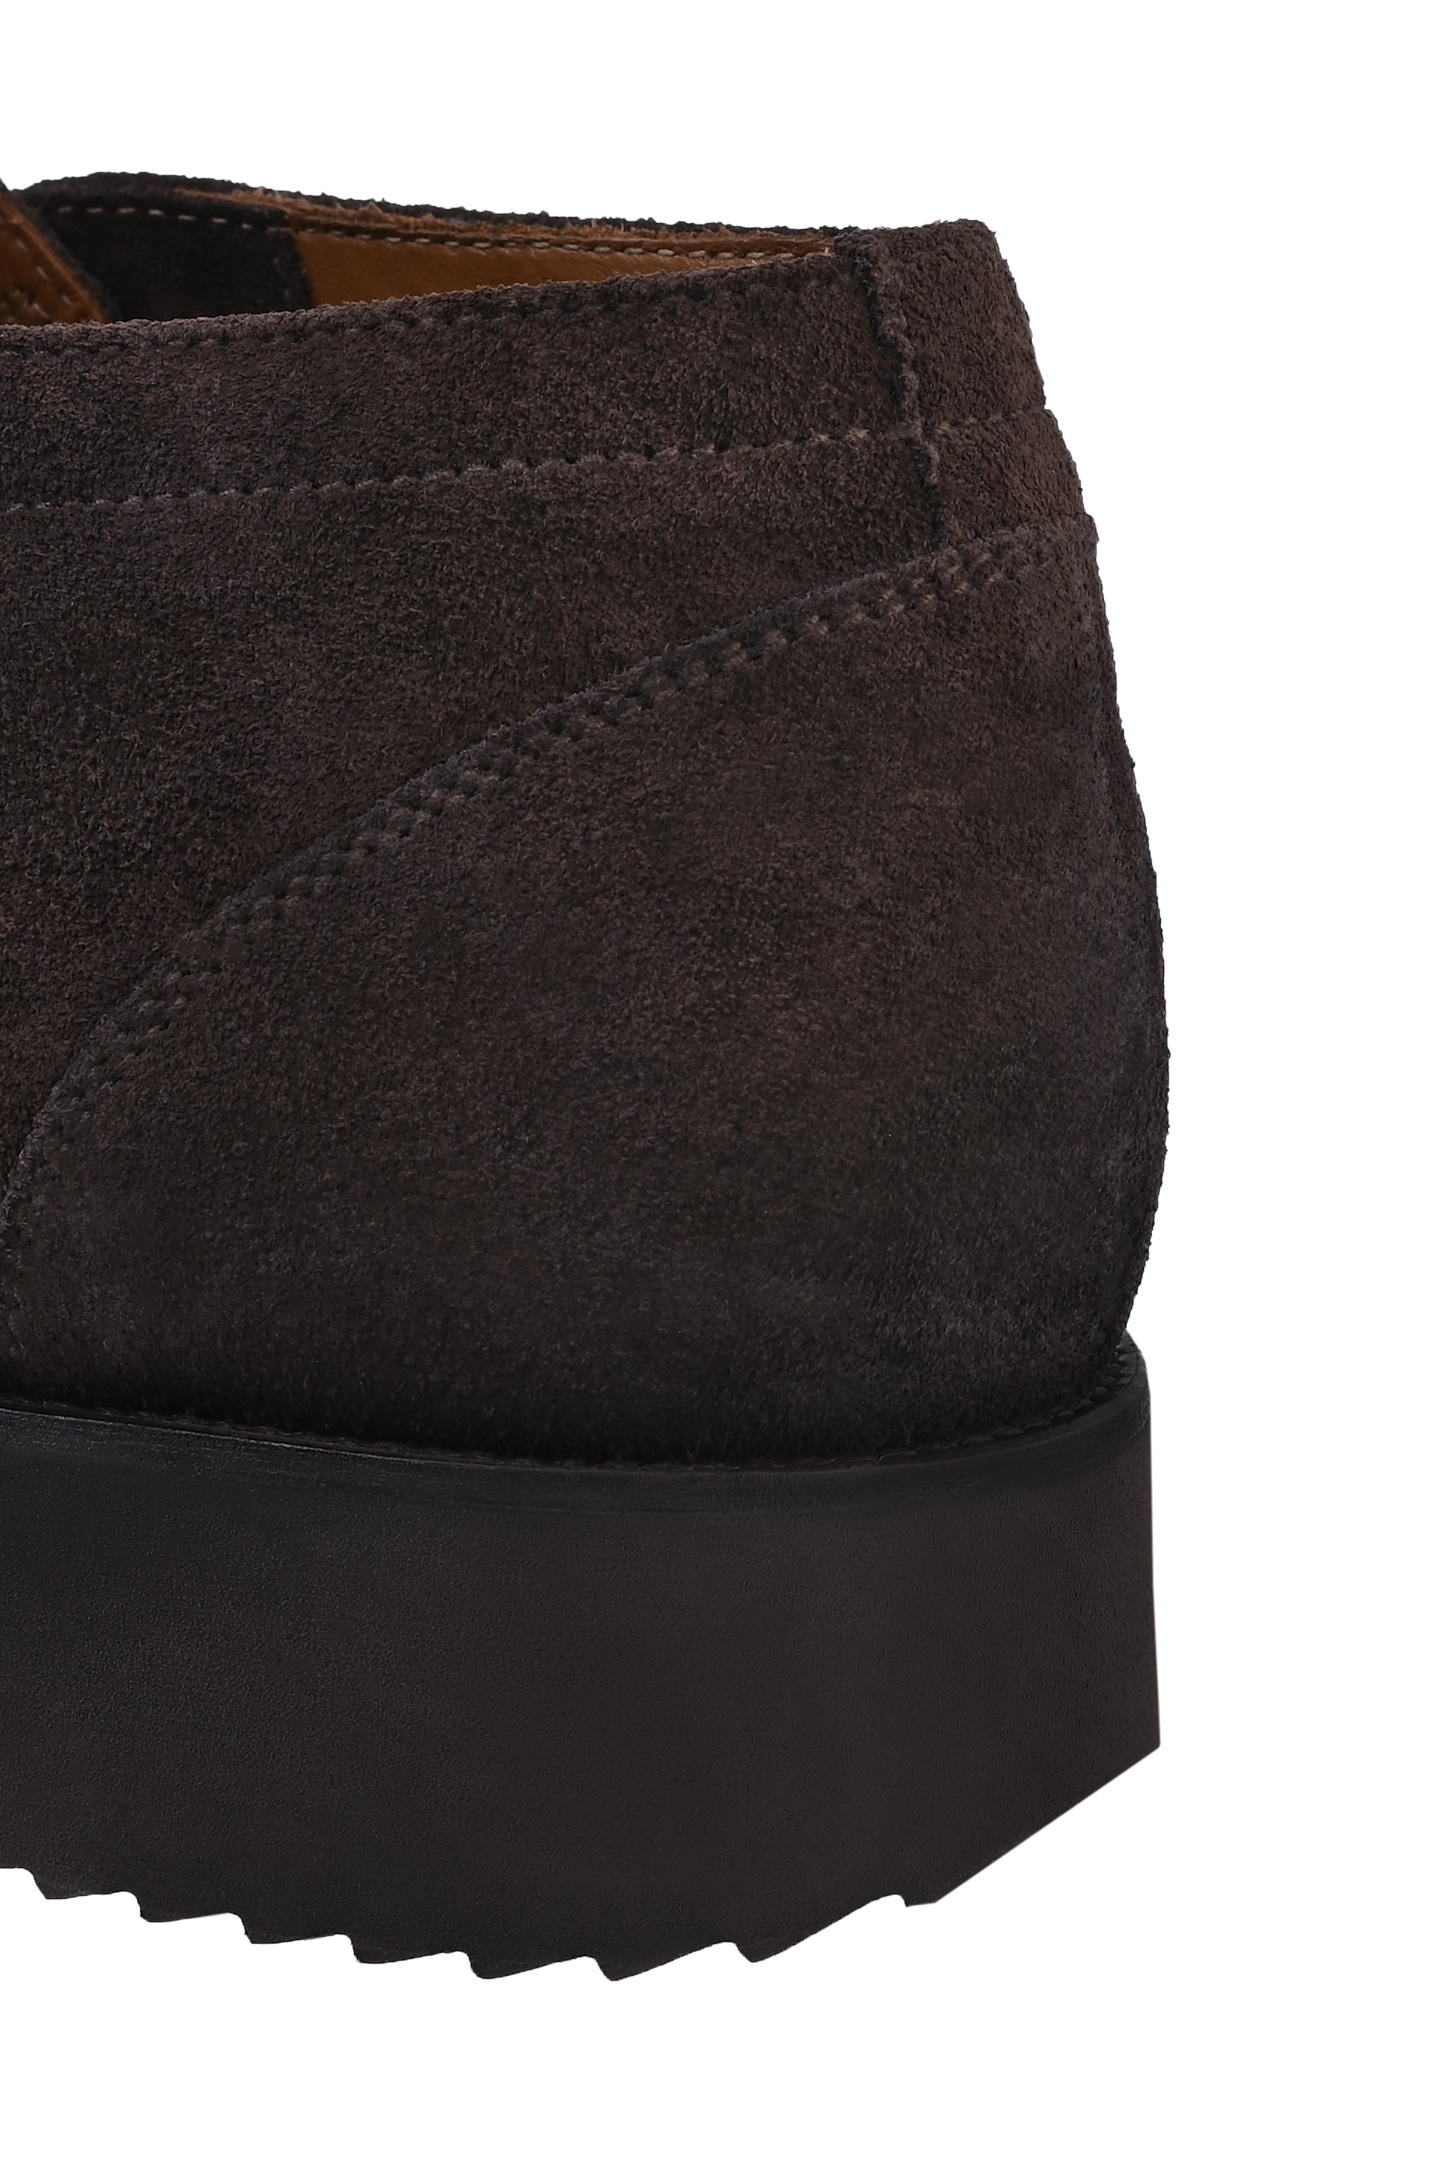 Ботинки DOUCAL'S DU3233DAKOUF024, цвет: Темно-коричневый, Мужской